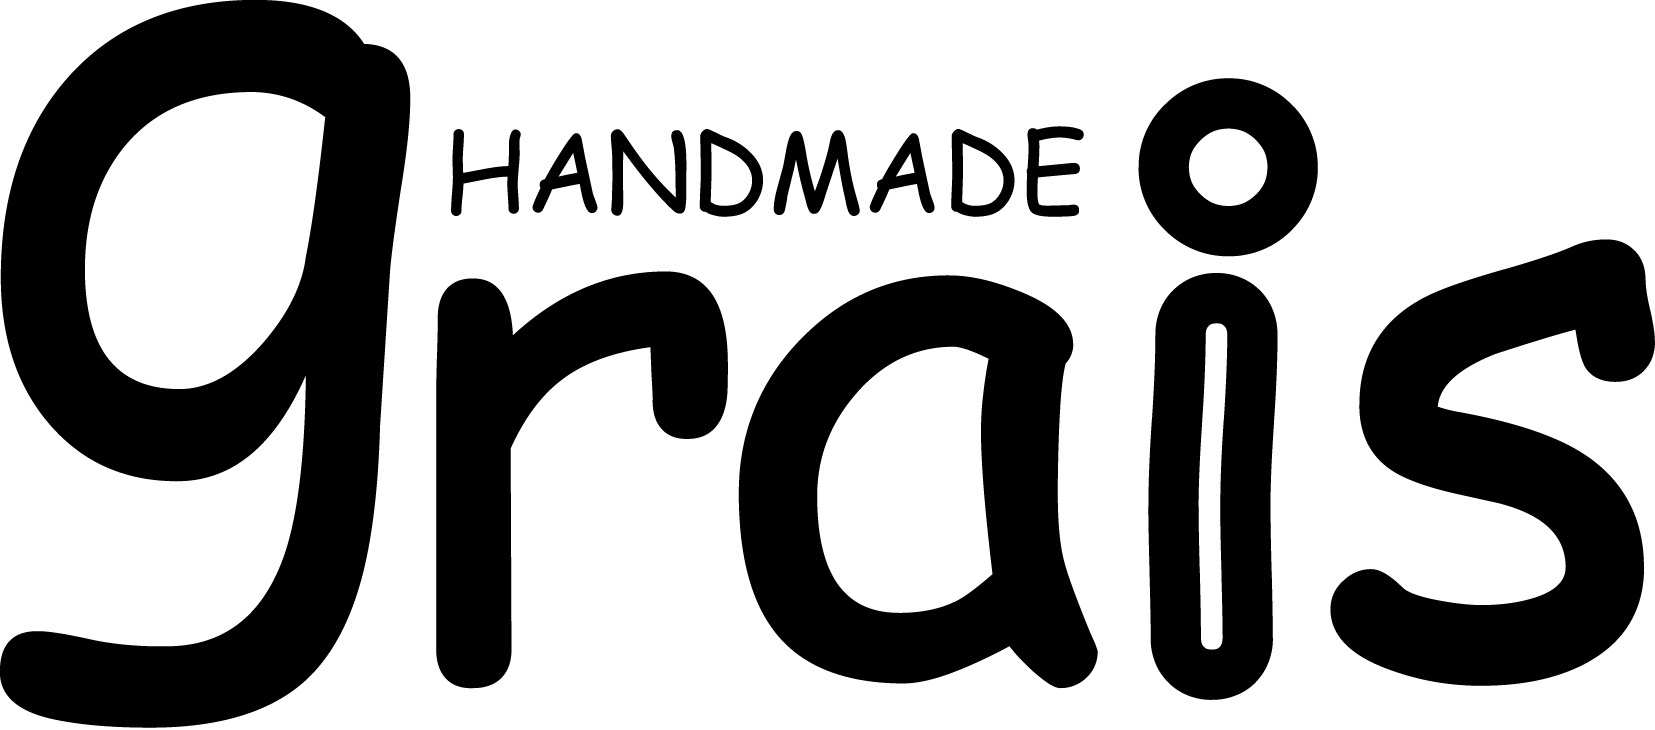 handmade Grais logo